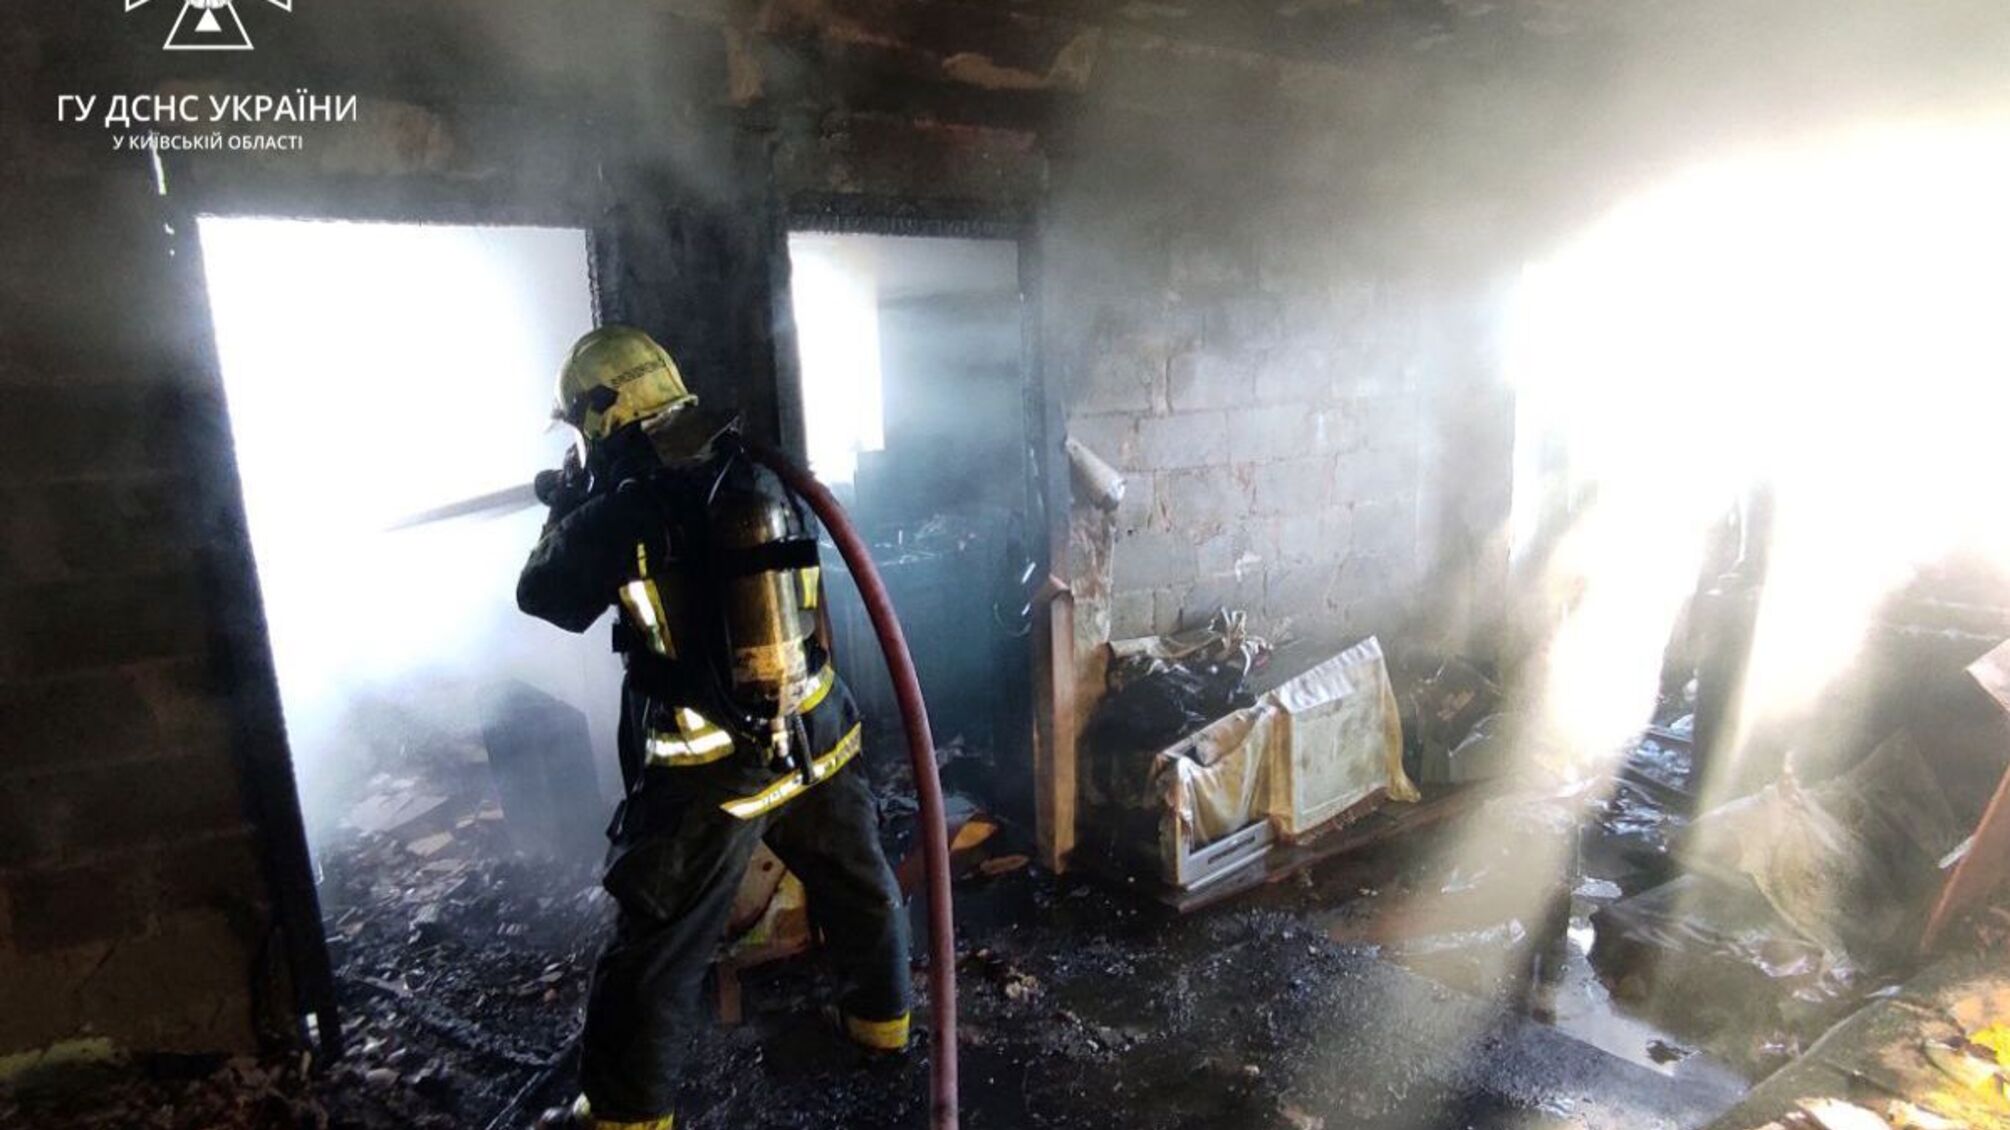 Под Киевом произошел пожар: спасатели успели вытащить из огня мужчину (фото)